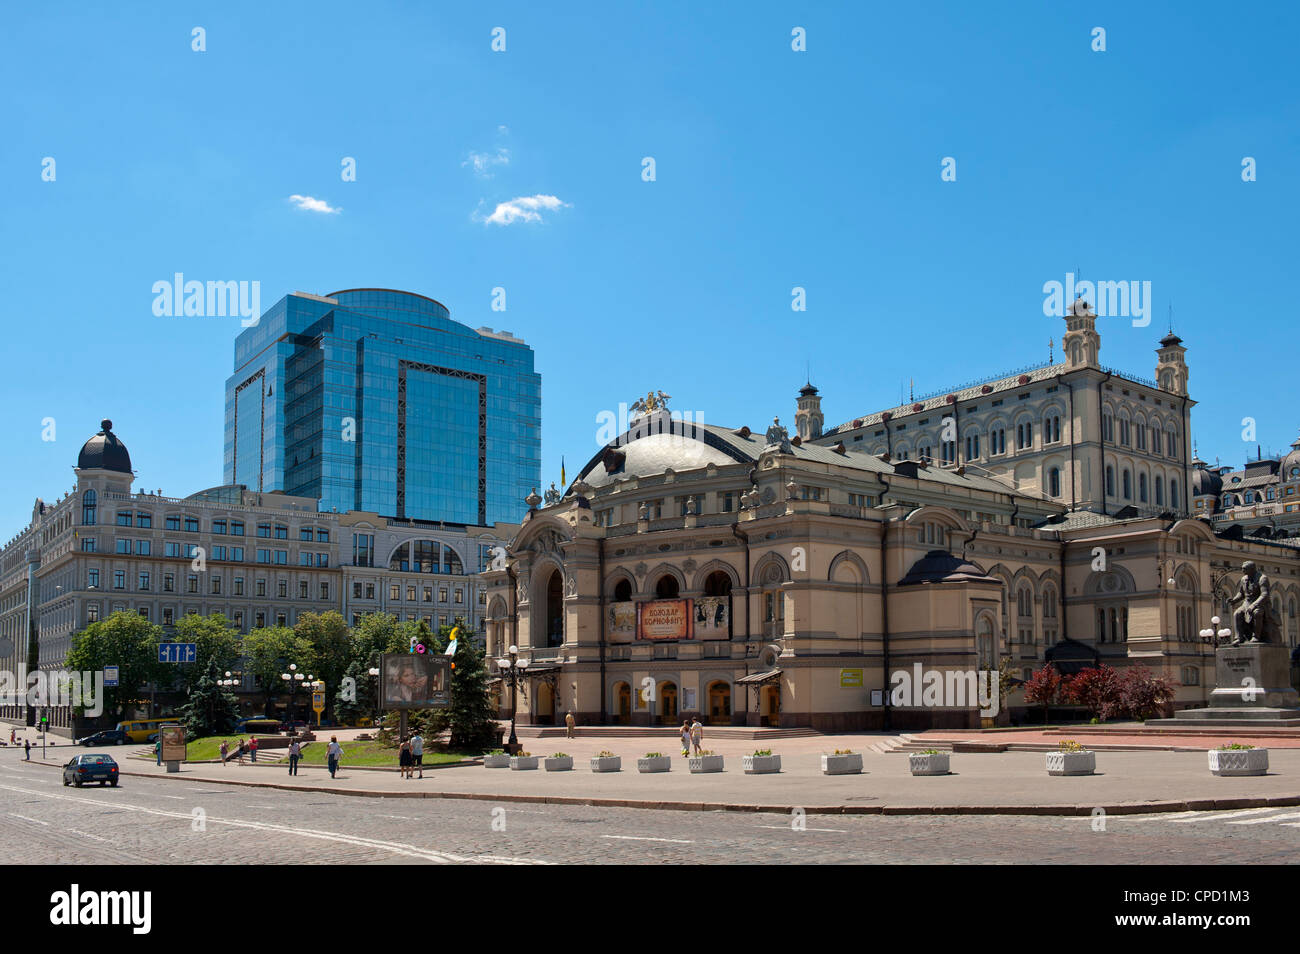 Opéra National de l'Ukraine, Kiev, Ukraine, l'Europe Banque D'Images